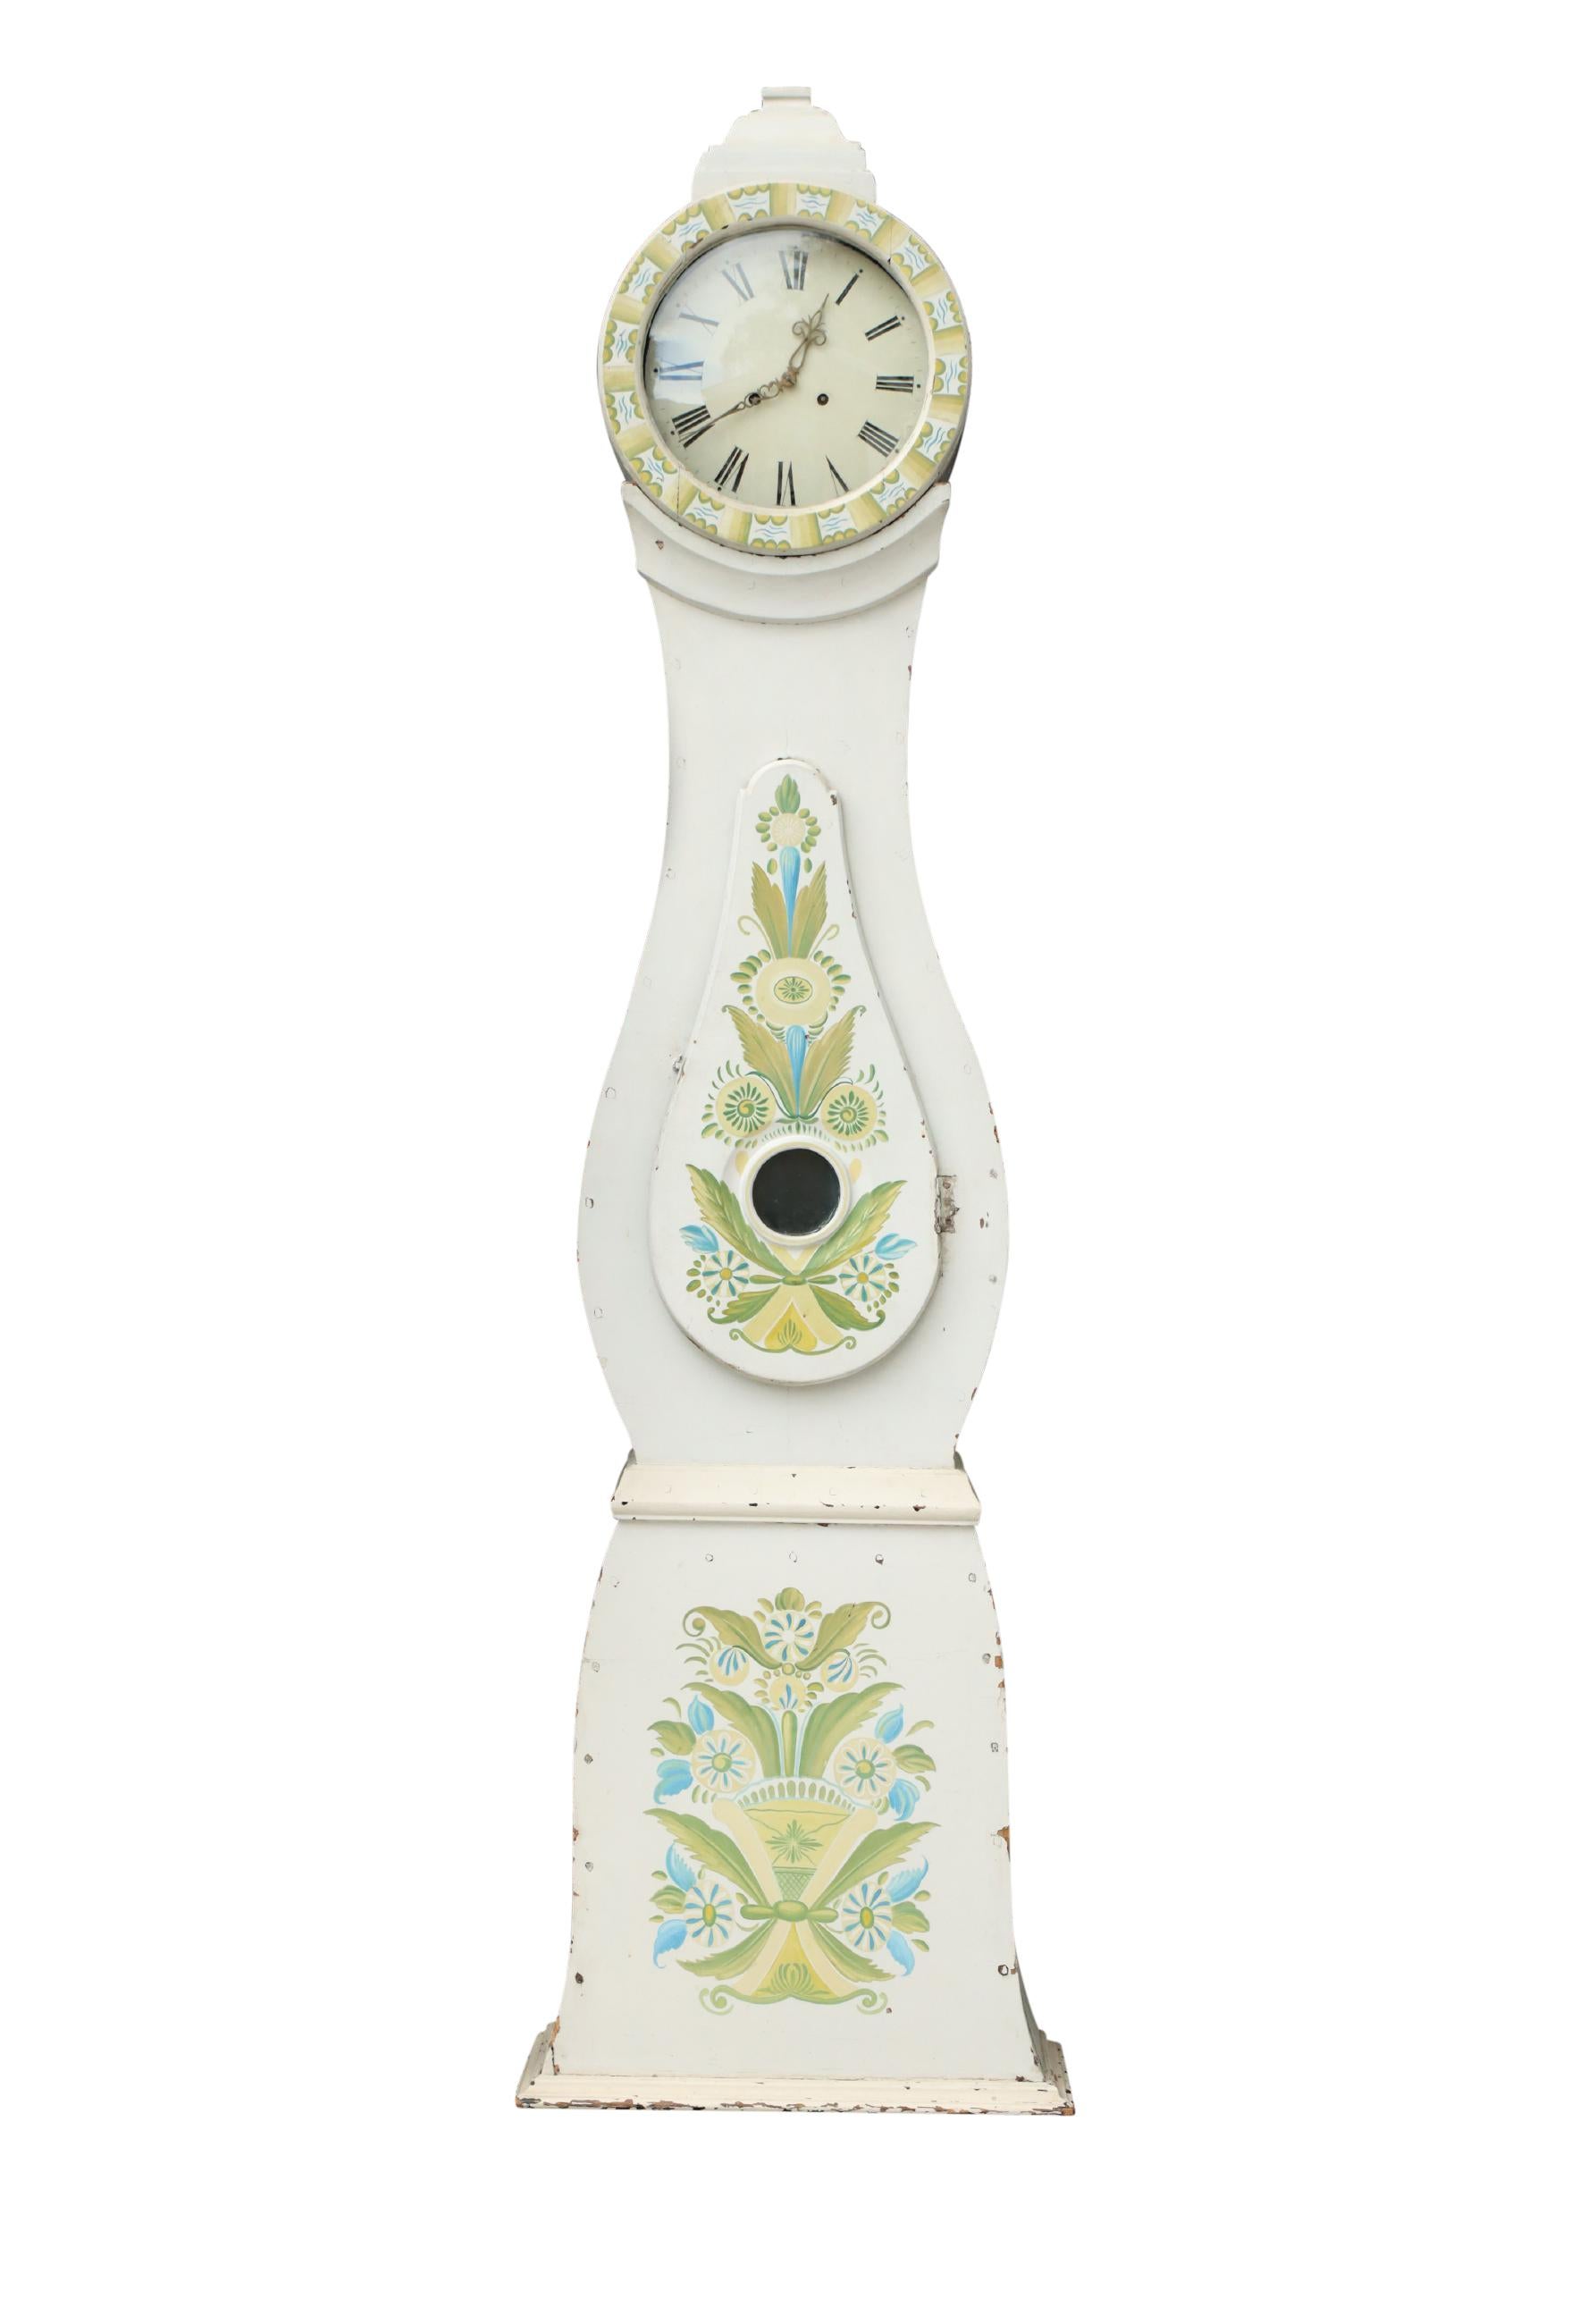 Horloge Mora suédoise des années 1800 avec des détails floraux peints à la main sur un fond peint en blanc (peinture d'origine). Couronne sculptée.  Mécanisme d'horlogerie de type Longcase fonctionnant avec un pendule, deux poids et une cloche